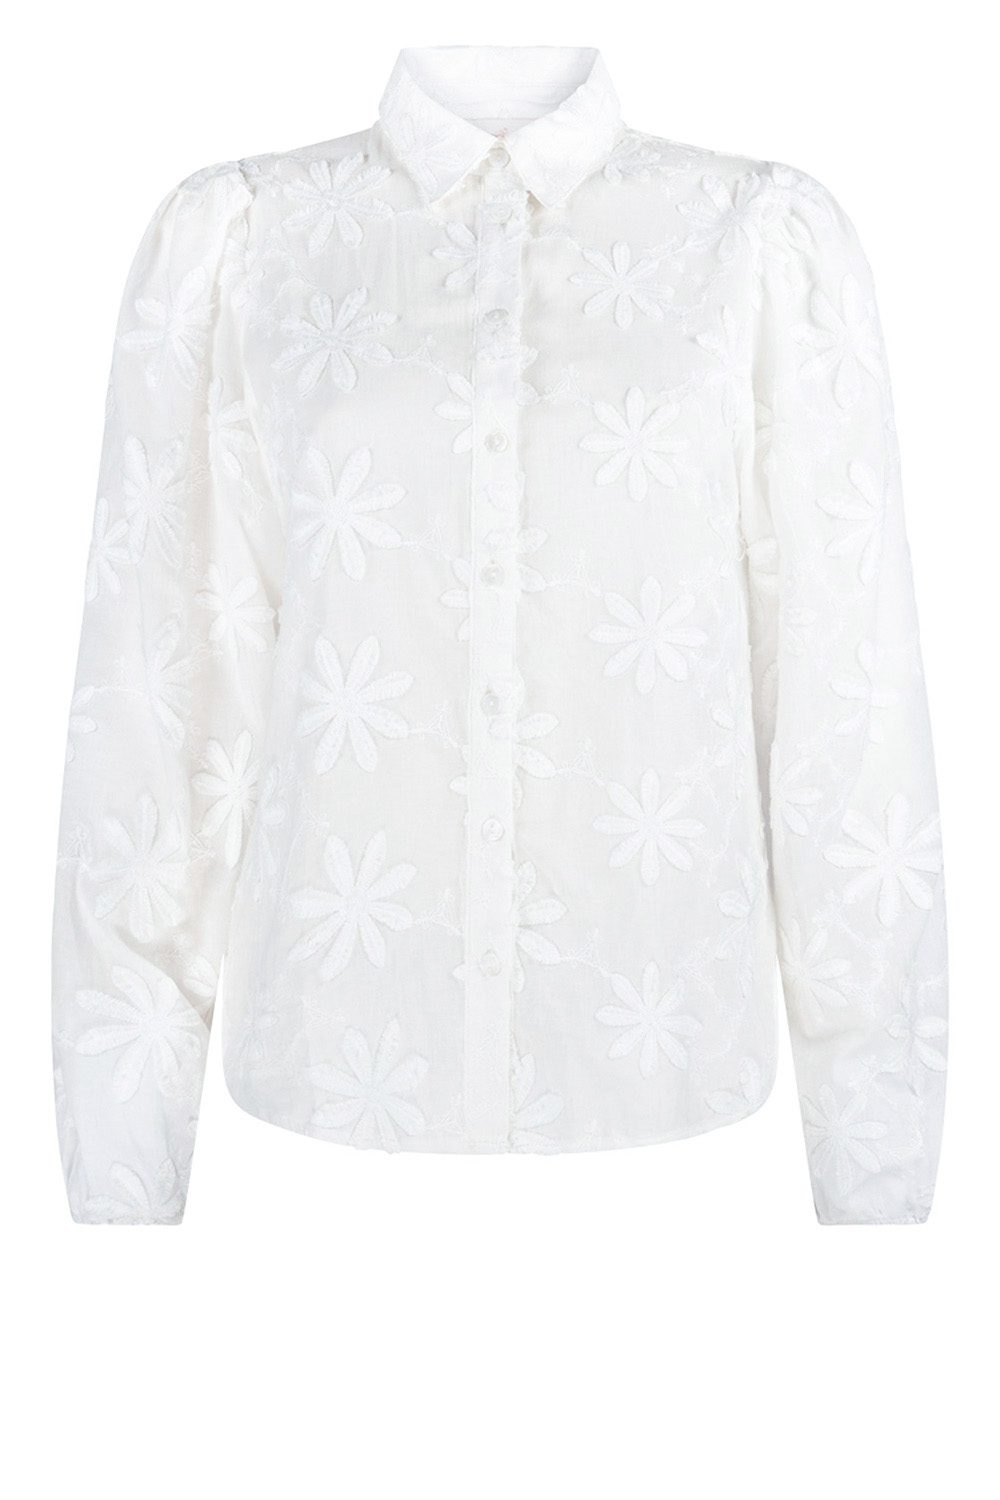 Aaiko Jacquard blouse Lien wit